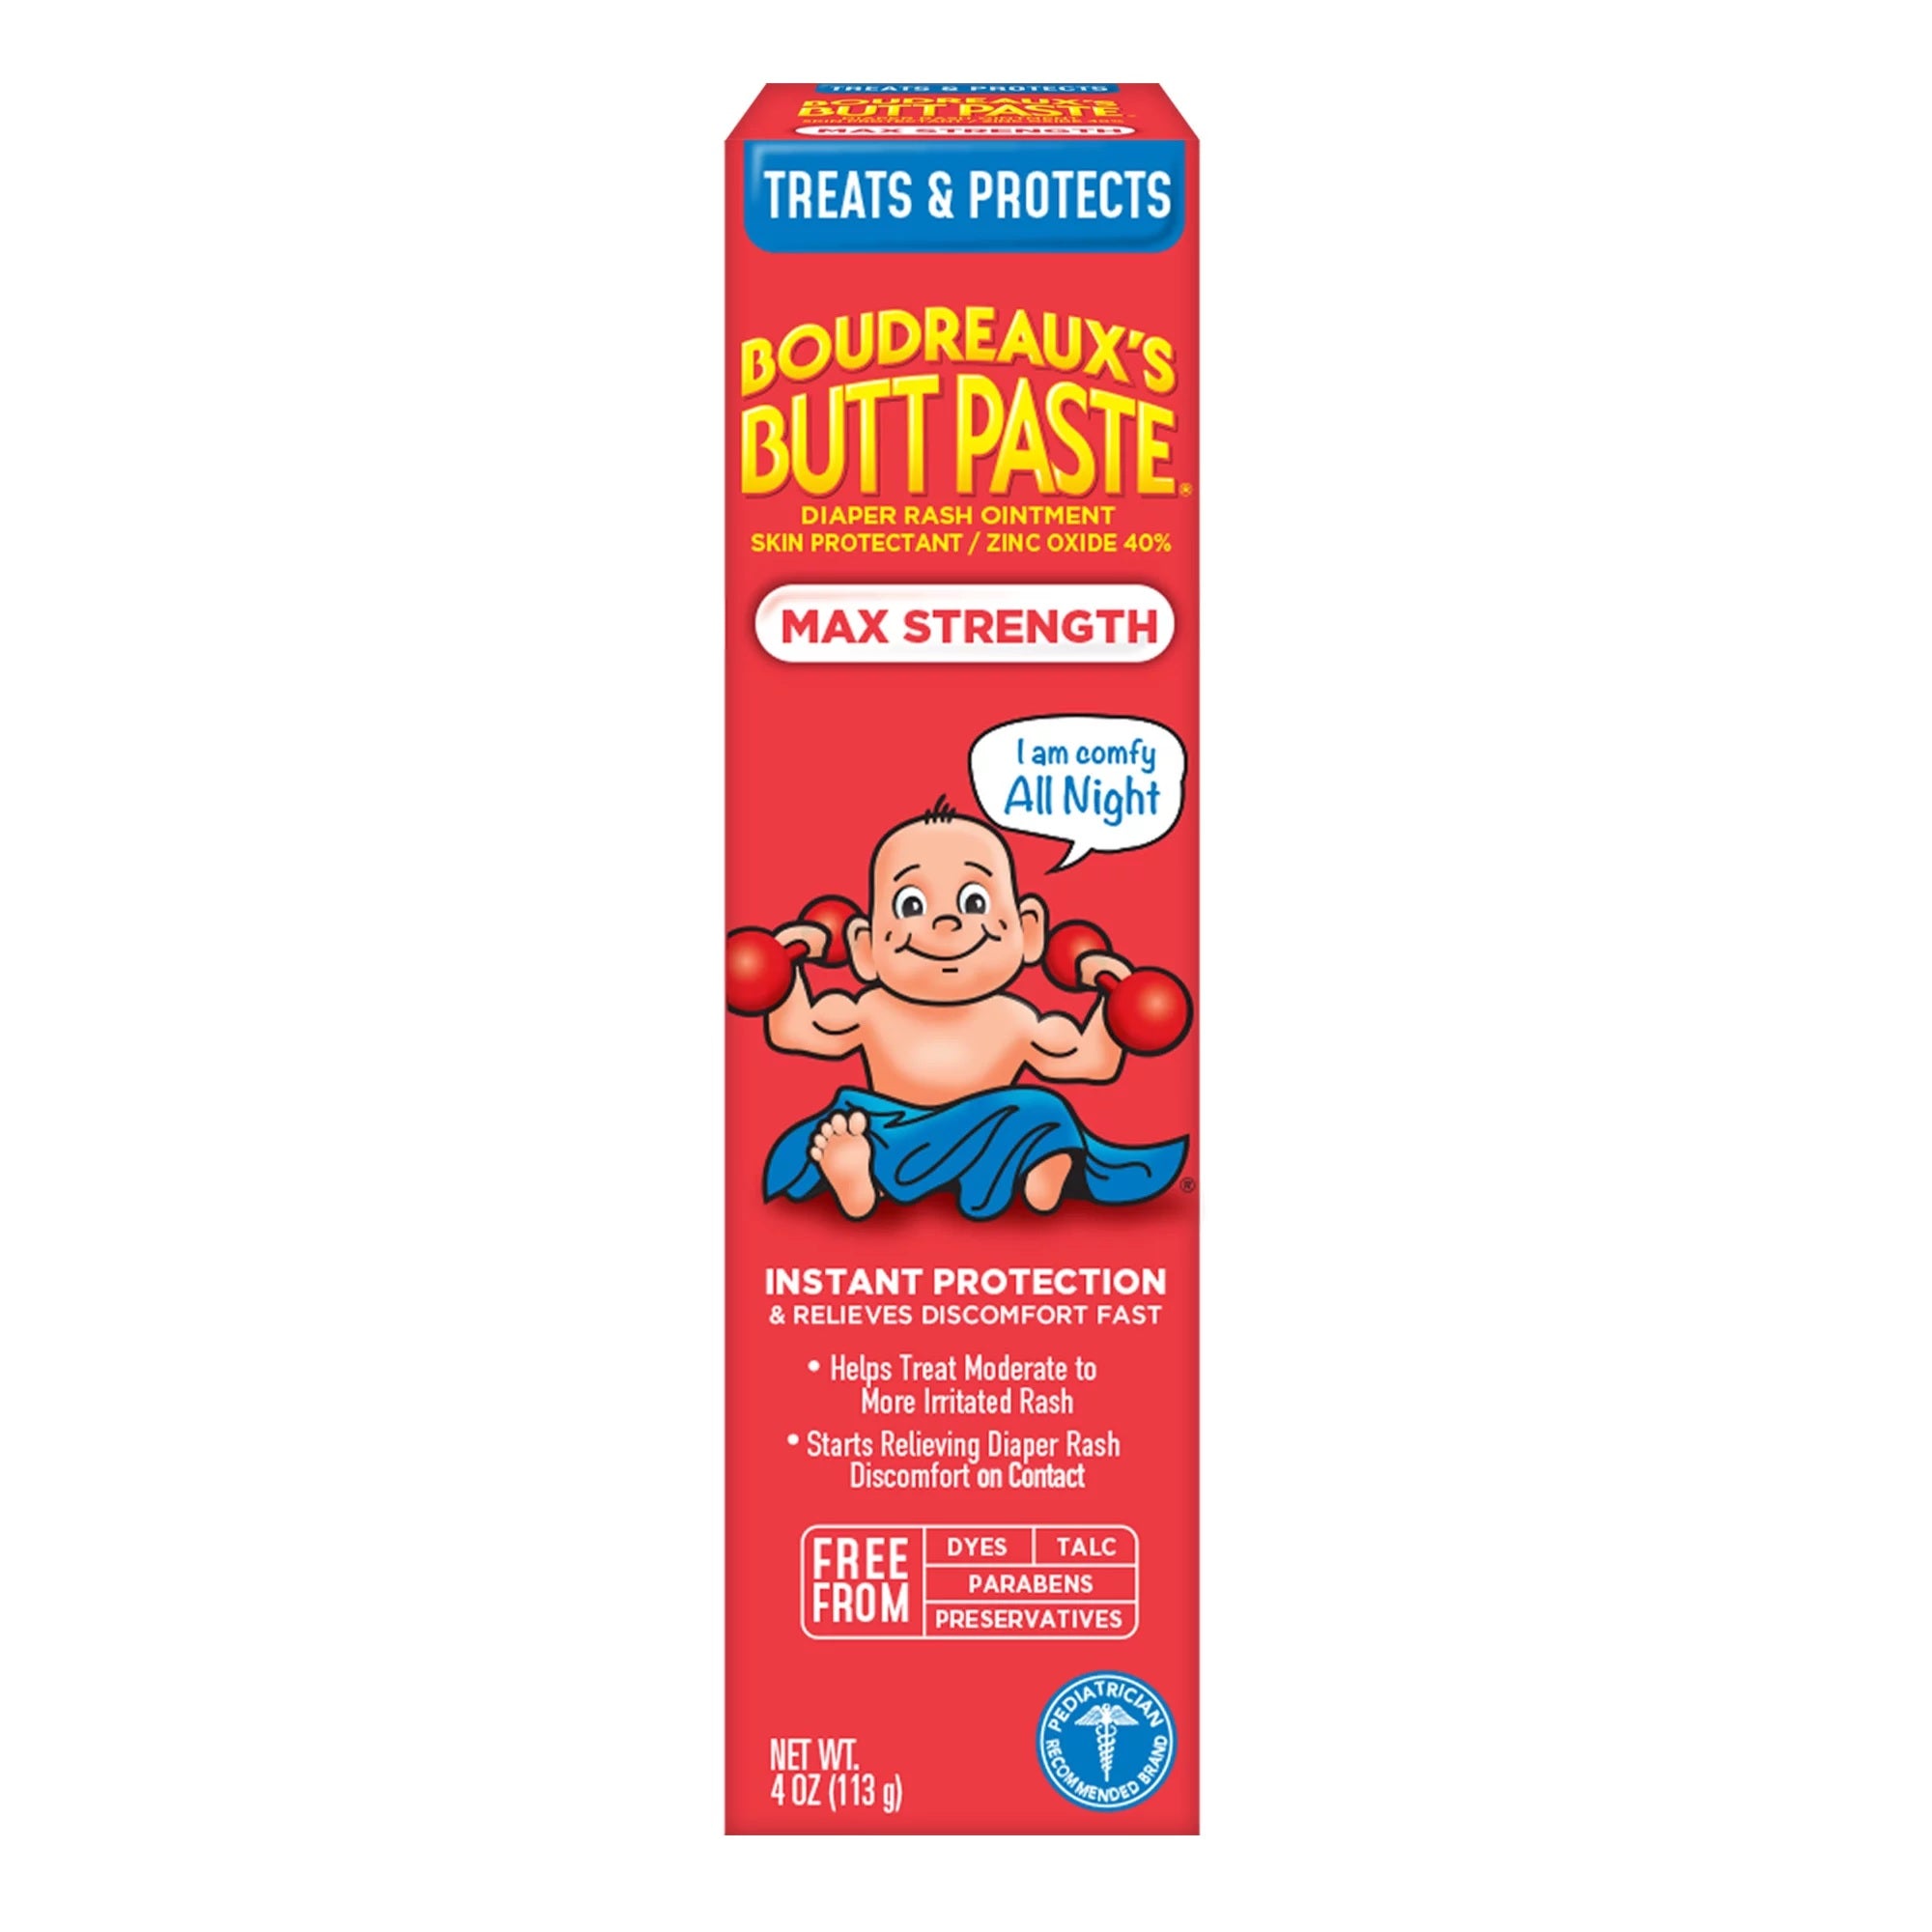 Boudreaux's Butt Paste Maximum Strength Diaper Rash Cream Tube for Baby - 4oz/3pk